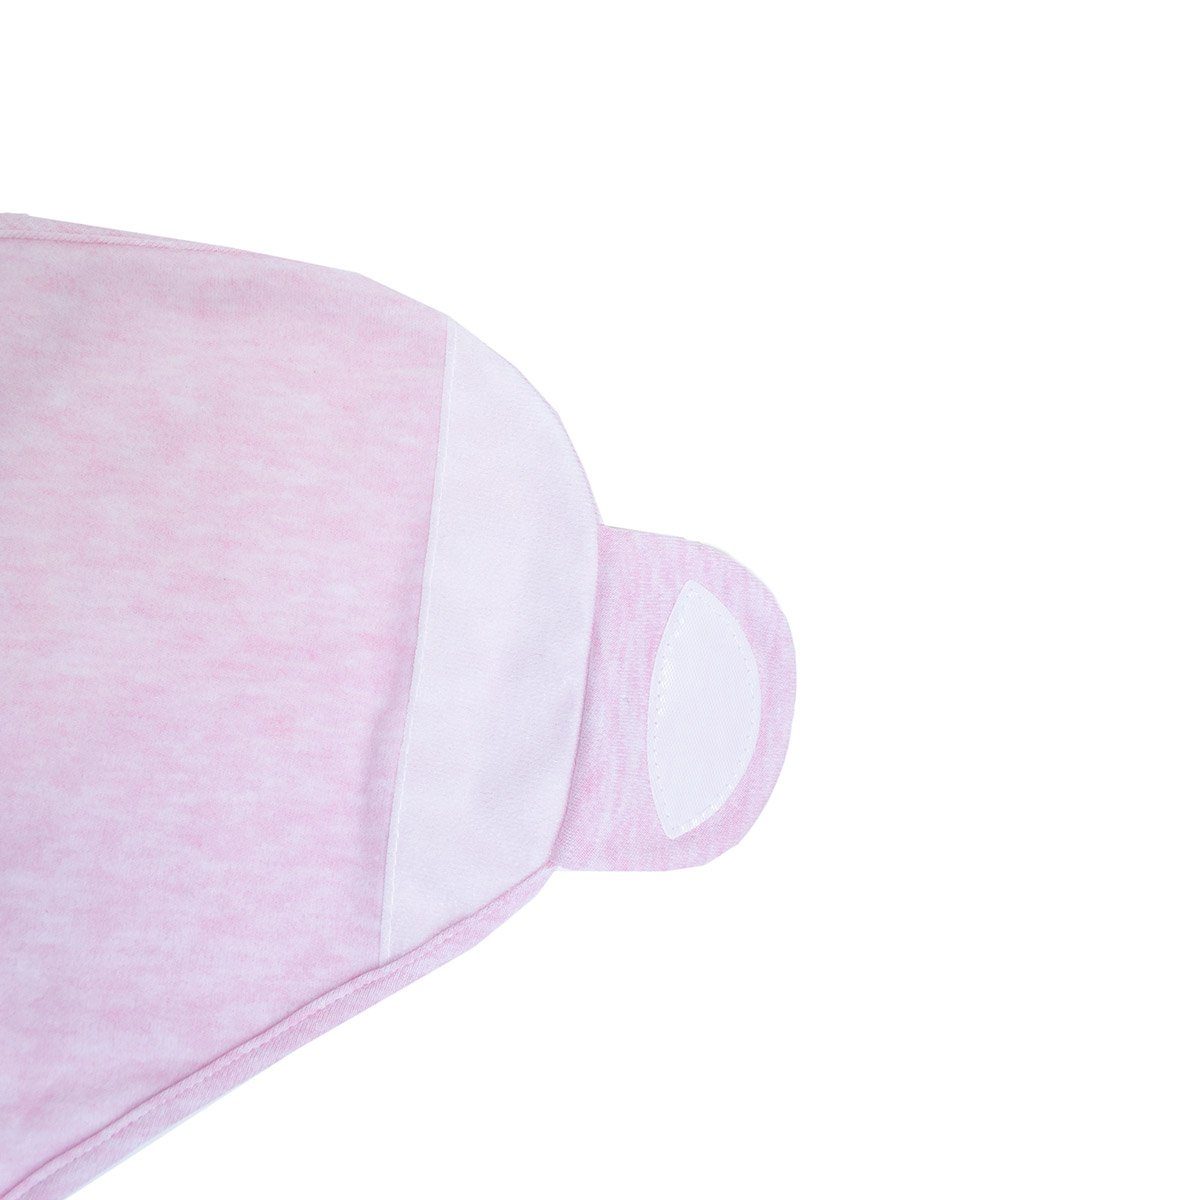 Babyschlafsack HOBEA-Germany mit Strampelsack Größen (Pucksack Pucksack in Mütze) Pucksack verschiedenen rosa Puckhilfe meliert